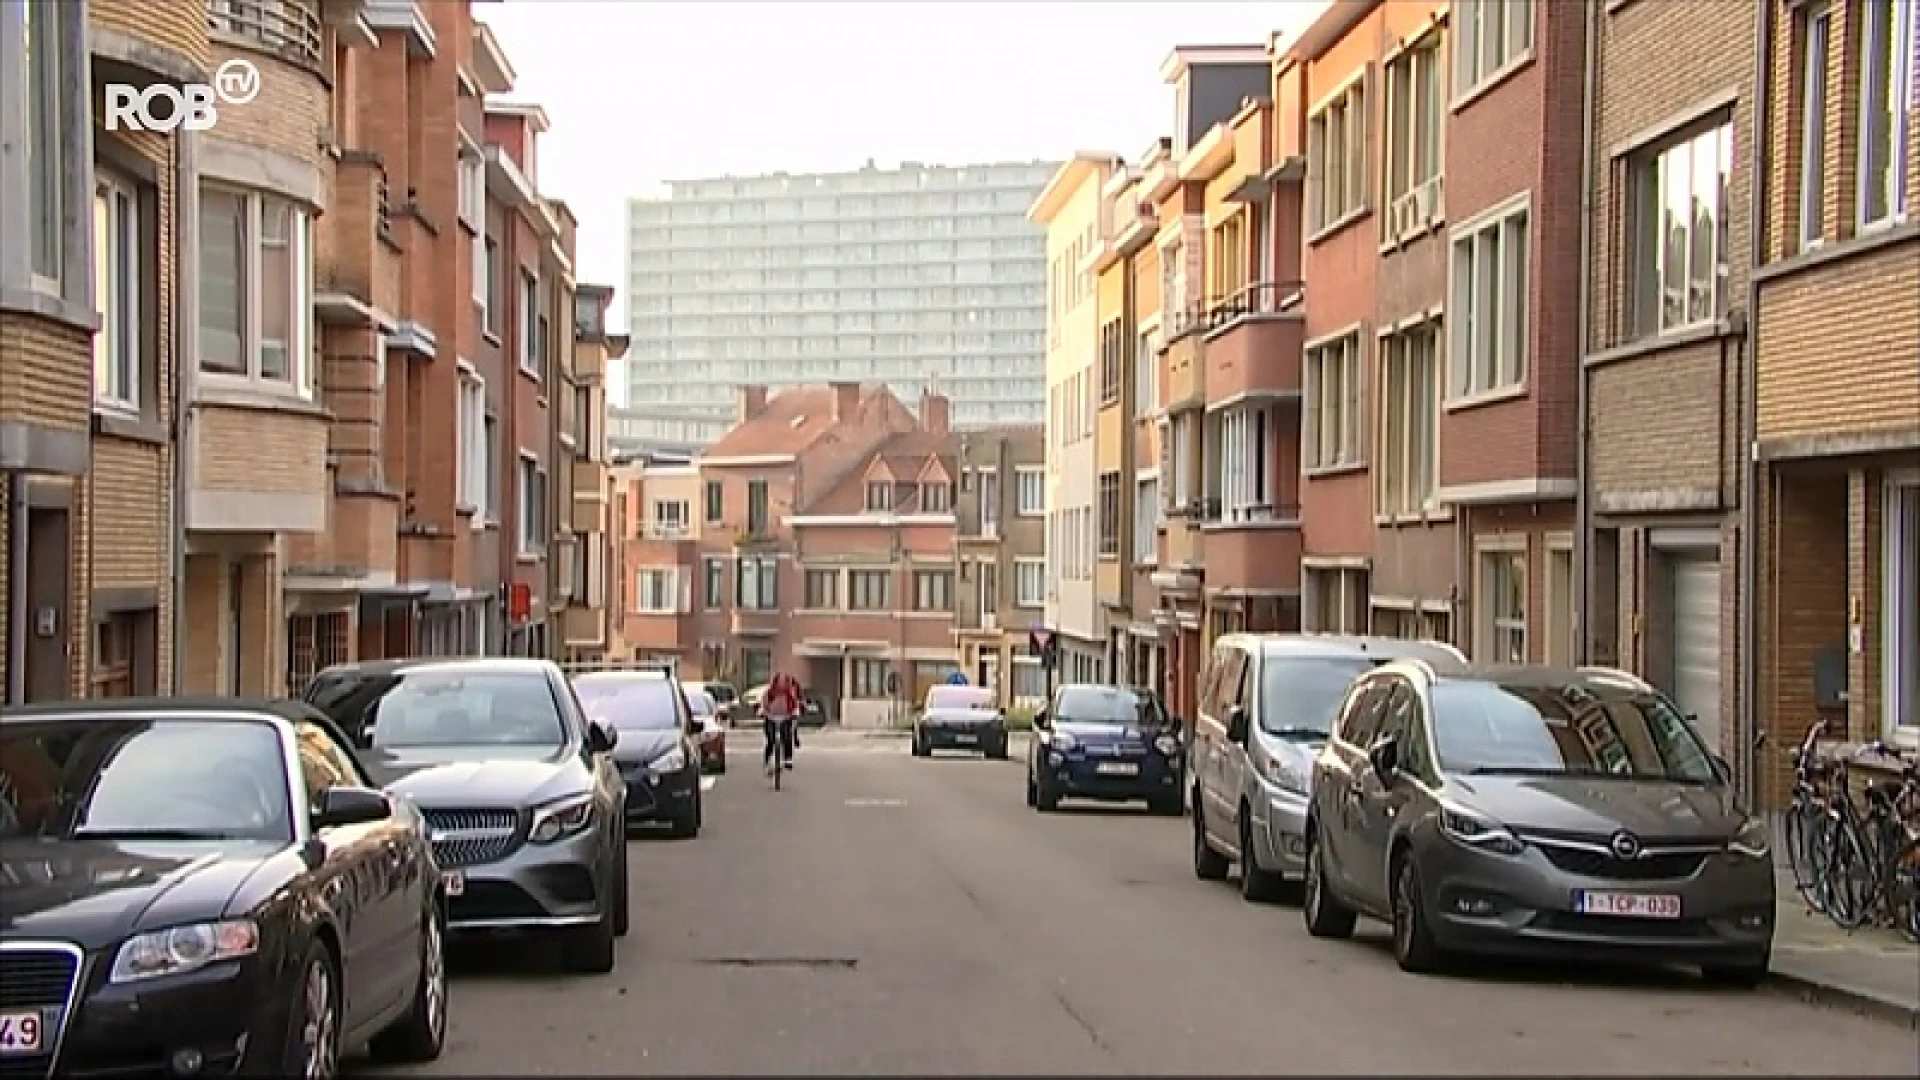 Huizenprijzen in Vlaams-Brabant blijven stijgen, ondanks coronacrisis